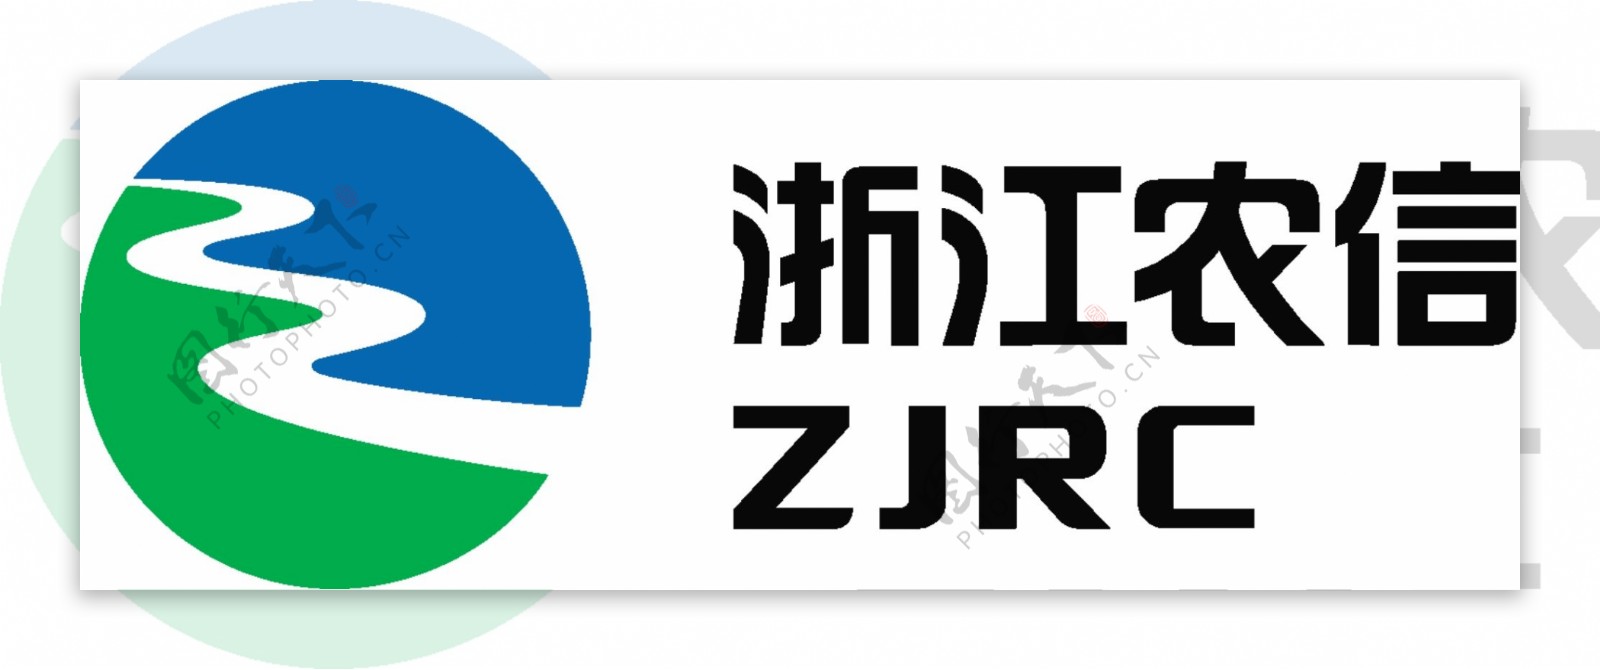 浙江农信logo